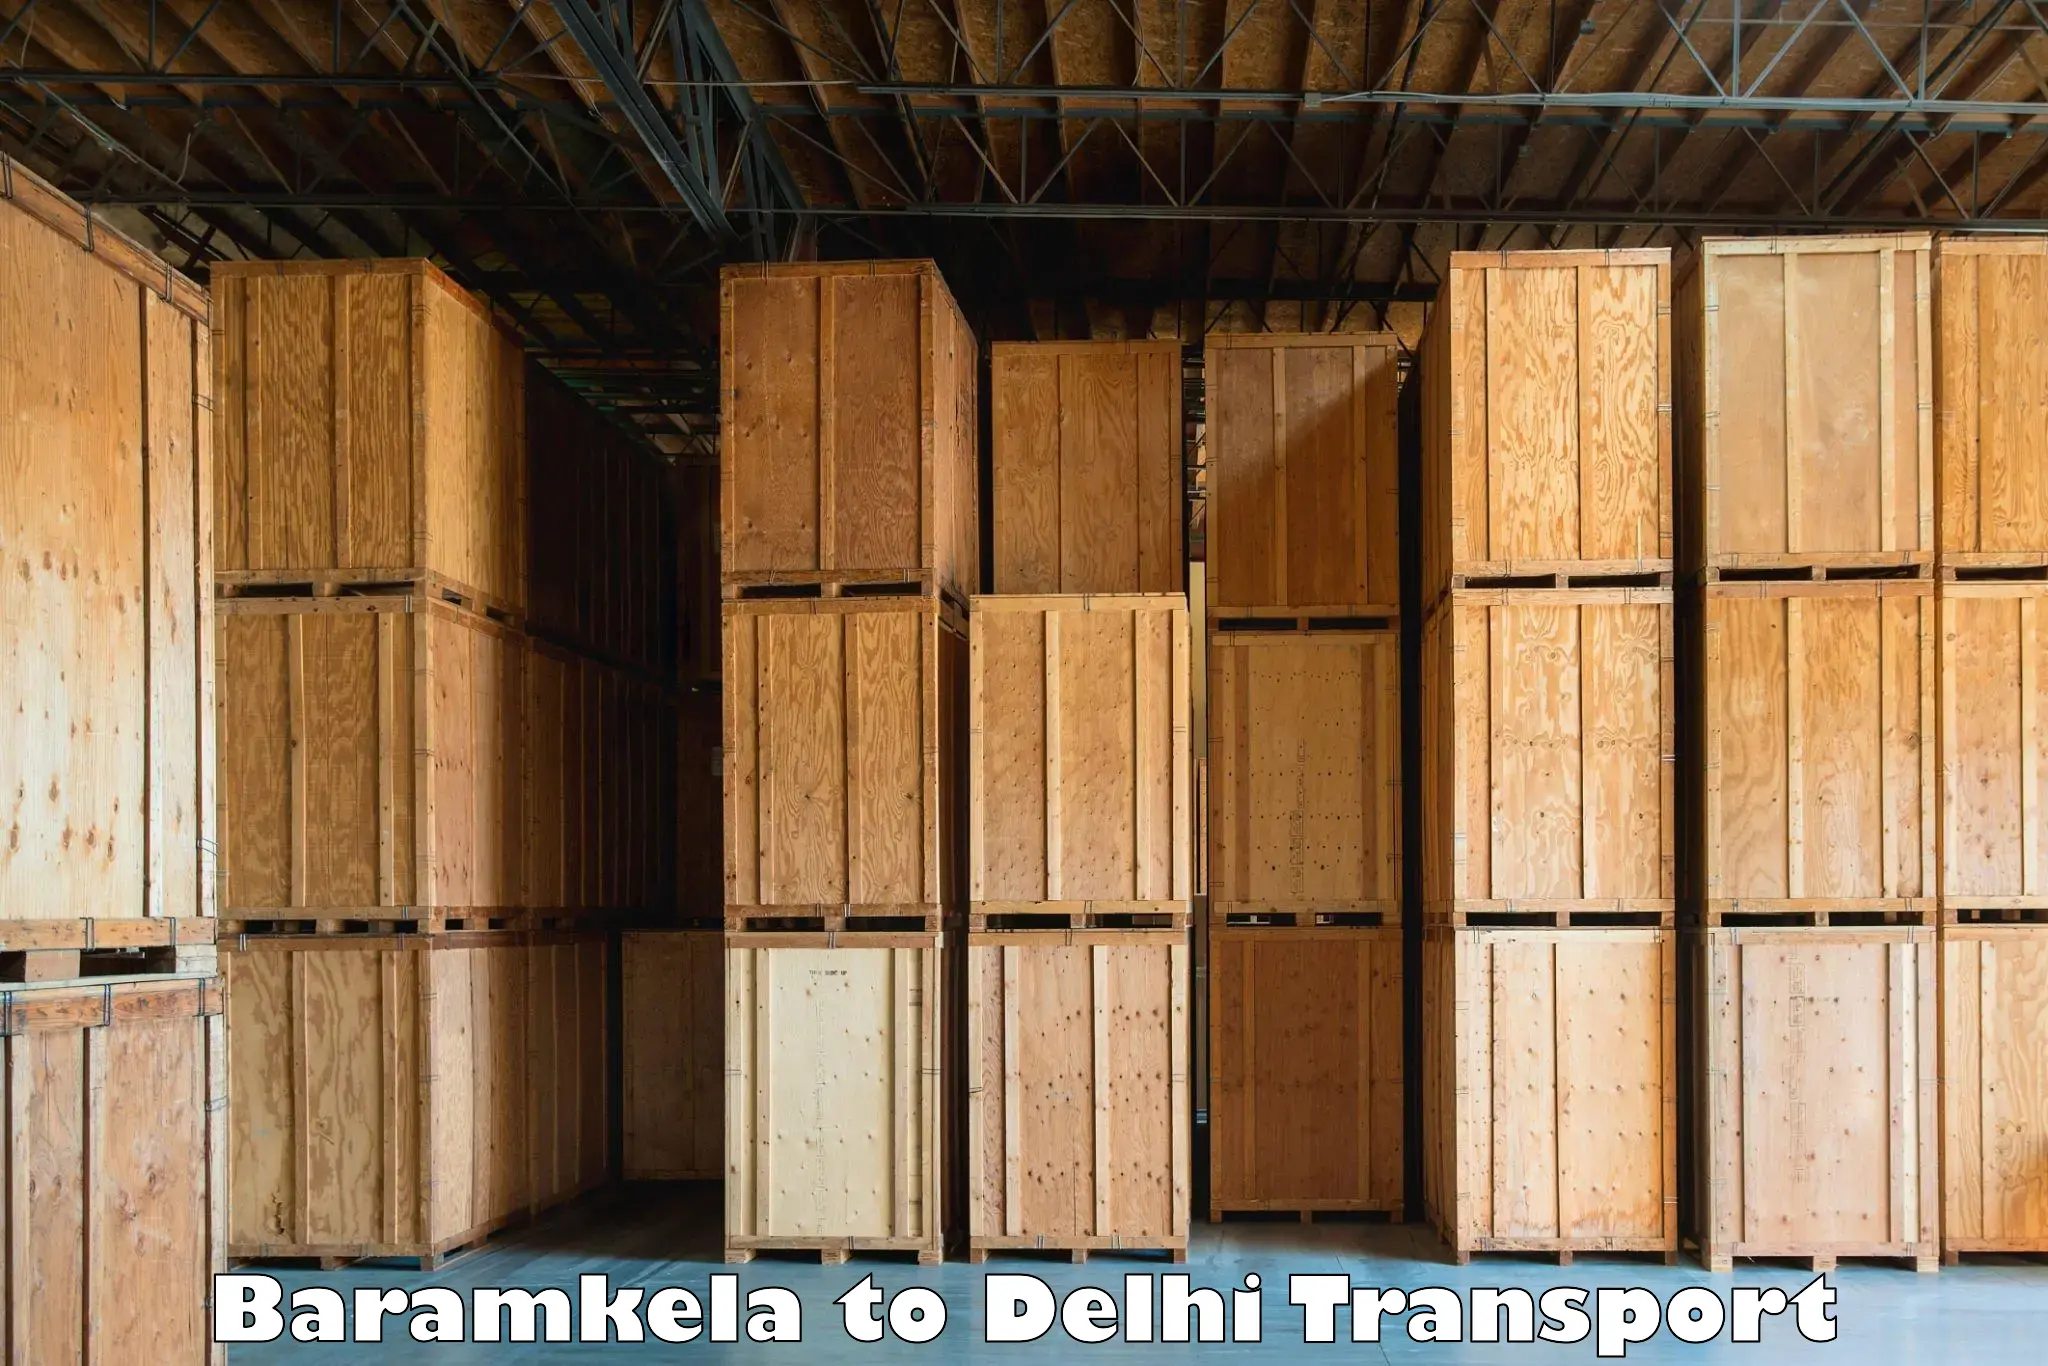 Commercial transport service Baramkela to Delhi